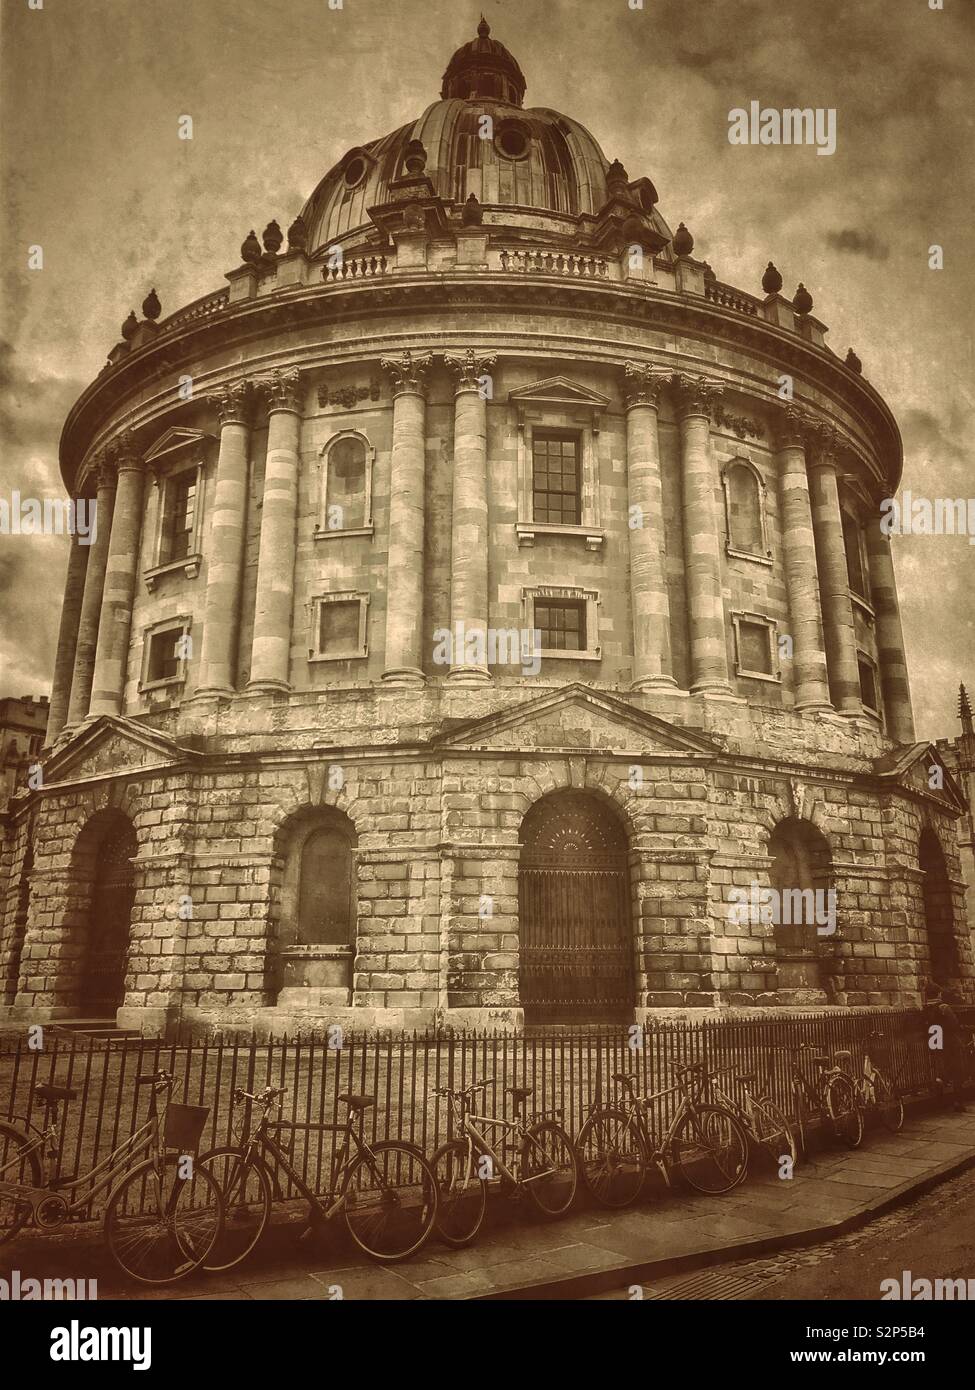 Un effetto retrò immagine della Radcliffe Camera edificio a Oxford, Inghilterra. Questo famoso edificio è utilizzato da studenti universitari come una biblioteca. Foto © COLIN HOSKINS. Foto Stock